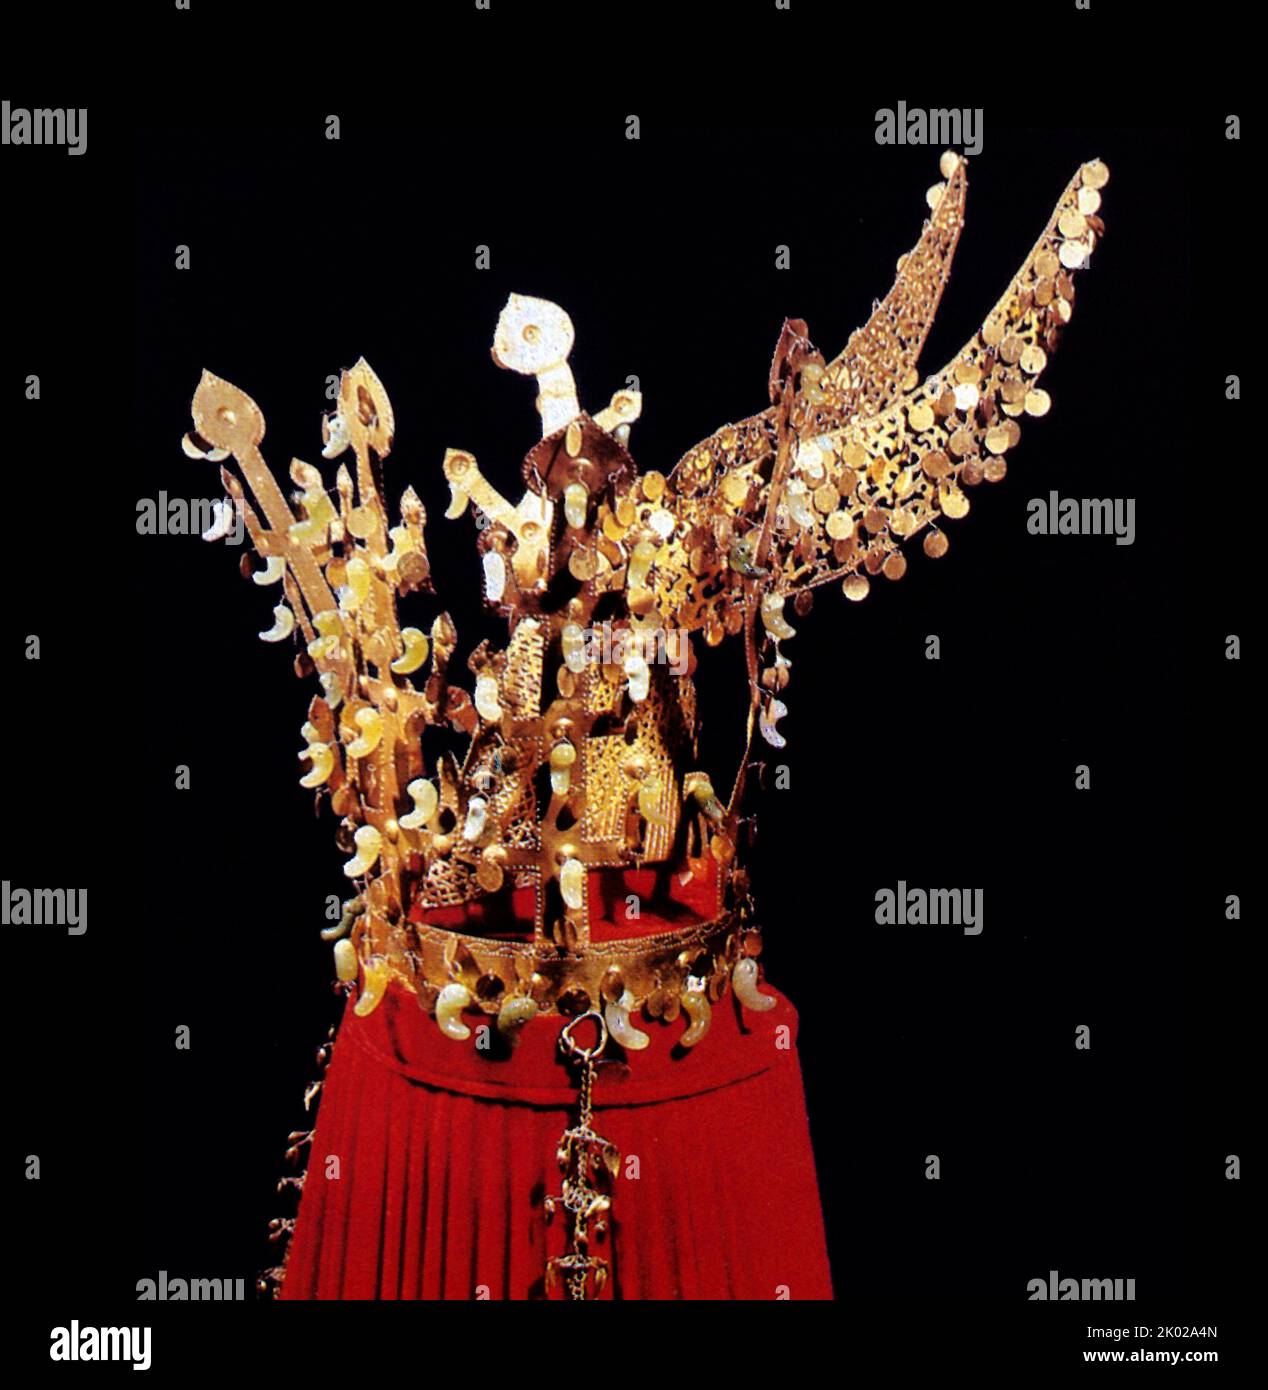 Die Goldkrone von Geumgwanchong, der größten Goldkrone, die in Korea entdeckt wurde. Das Grab der goldenen Krone (Geumgwanchong) wurde nach diesem Schatz benannt. Sie wurde am 12. Dezember 1962 als nationaler Schatz bezeichnet.&#13;&#10;die Krone ist 44 Zentimeter hoch und hat einen Durchmesser von 19 Zentimetern. Es ist die größte goldene Krone aus Silla, die bisher entdeckt wurde. Die Kronen von Silla wurden im koreanischen Königreich Silla etwa in den 5.-7. Jahrhunderten hergestellt. Stockfoto